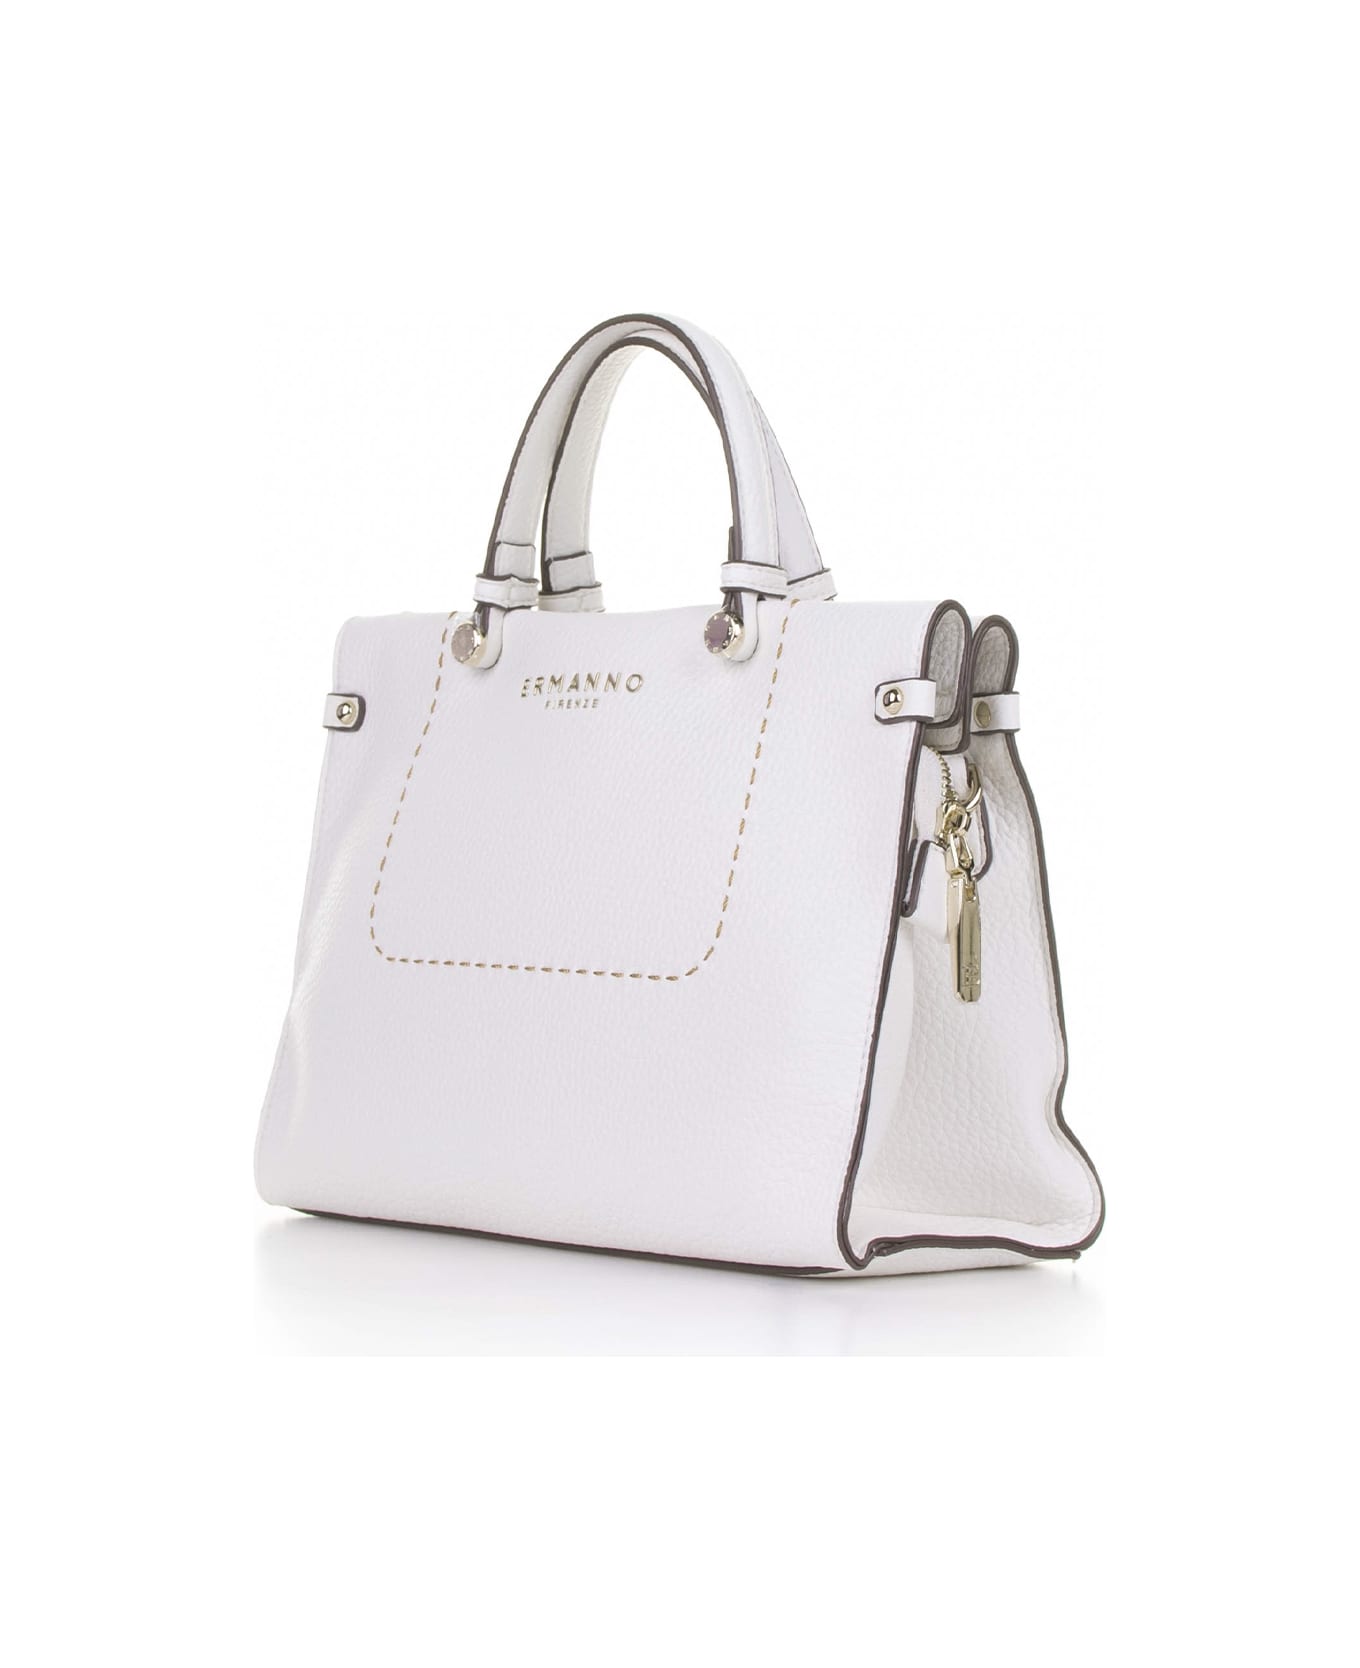 Ermanno Scervino Petra Small White Leather Handbag - BIANCO